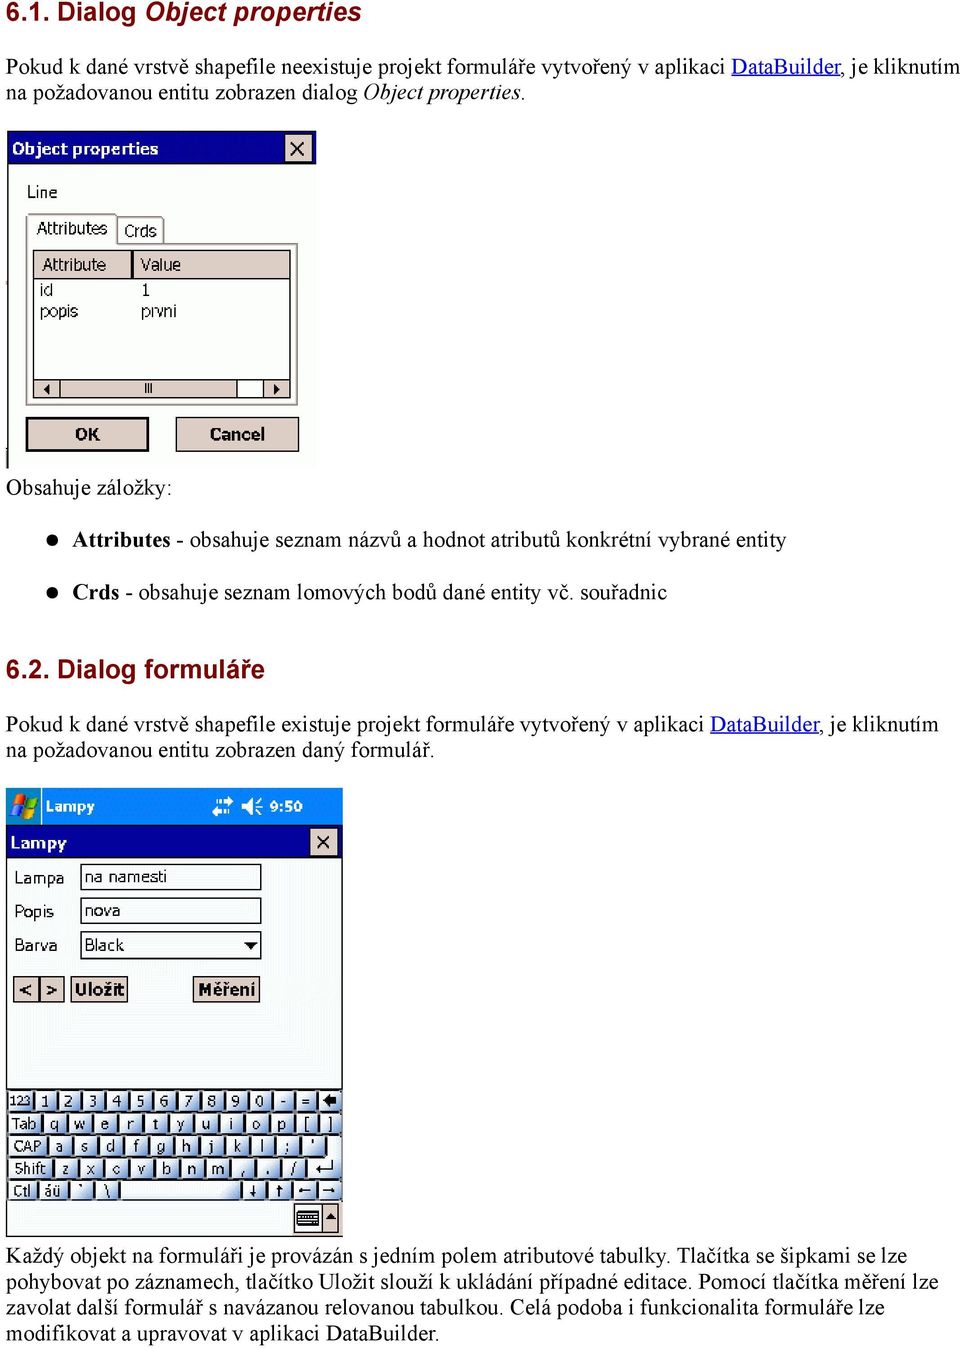 Dialog formuláře Pokud k dané vrstvě shapefile existuje projekt formuláře vytvořený v aplikaci DataBuilder, je kliknutím na požadovanou entitu zobrazen daný formulář.